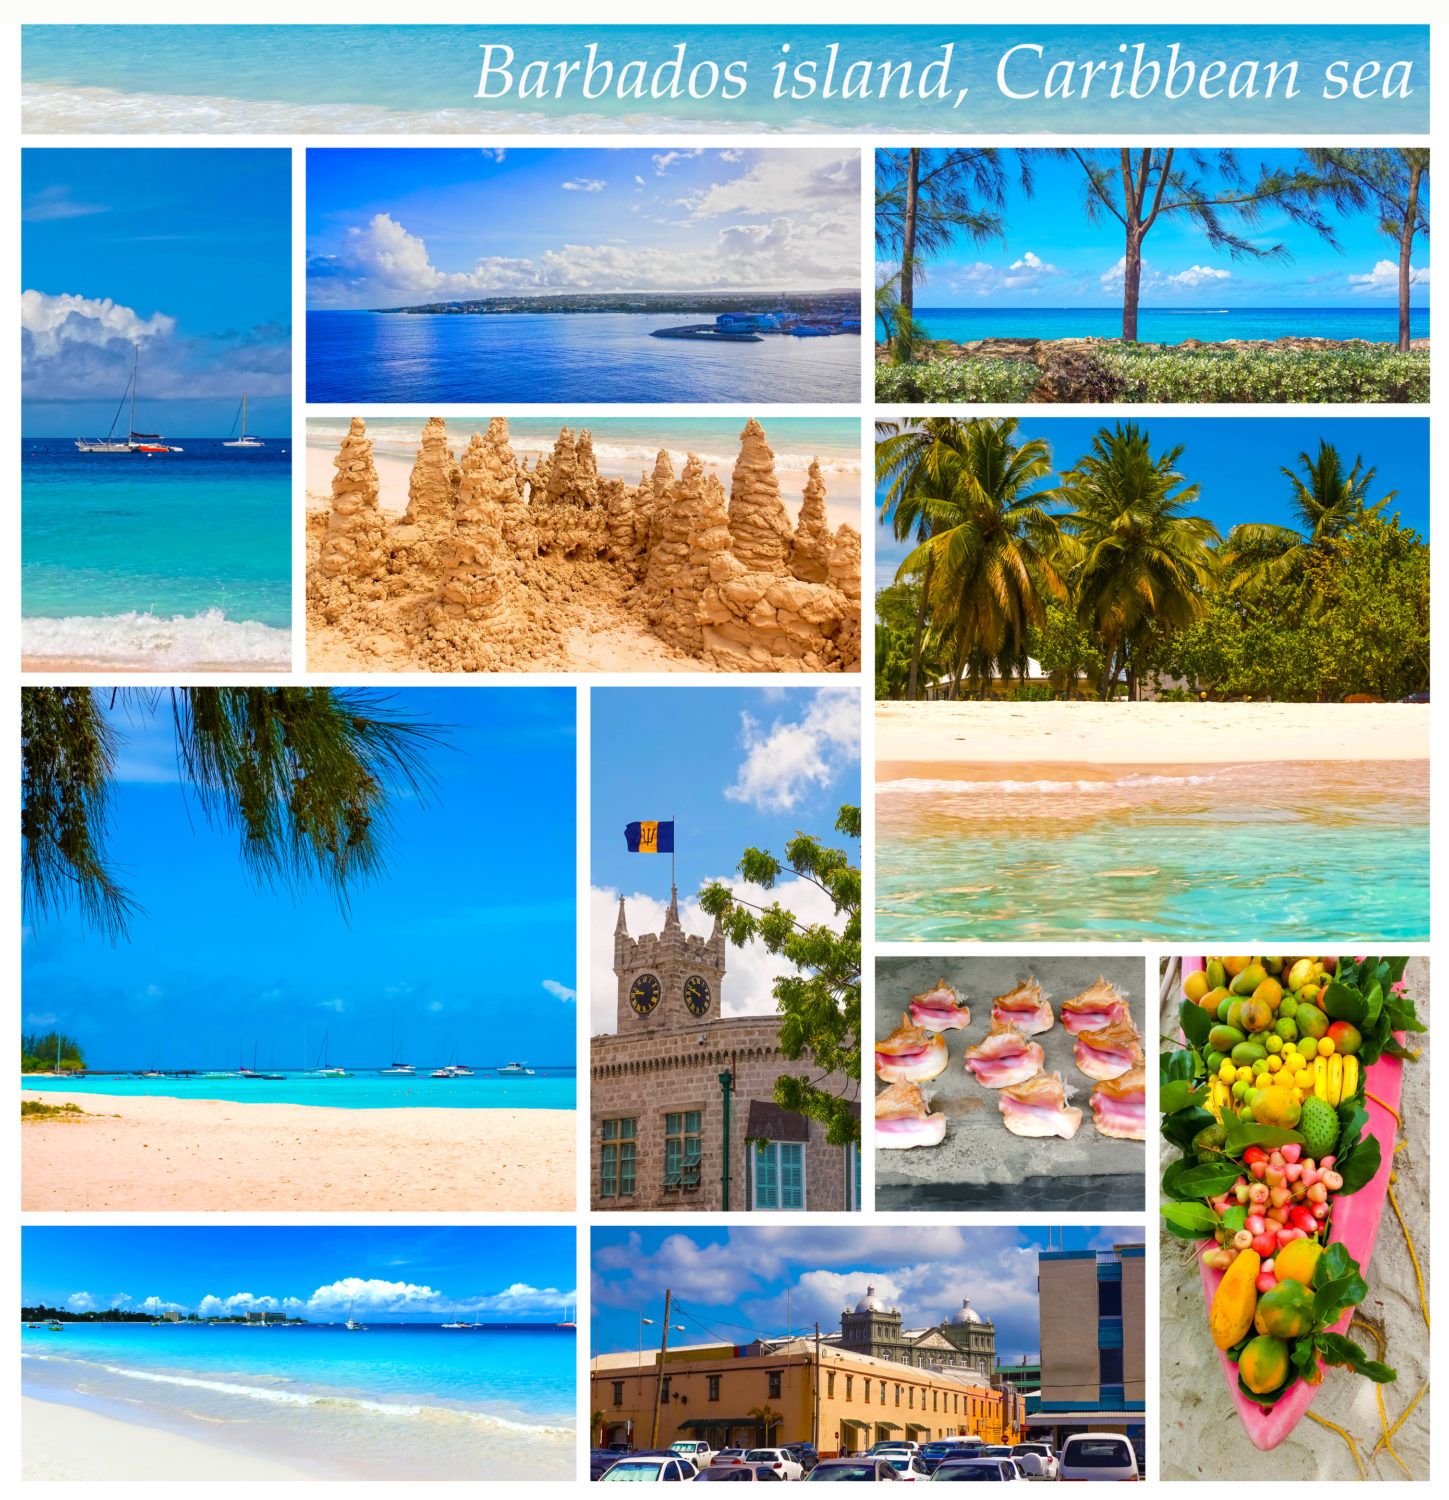 Barbados shore excursions